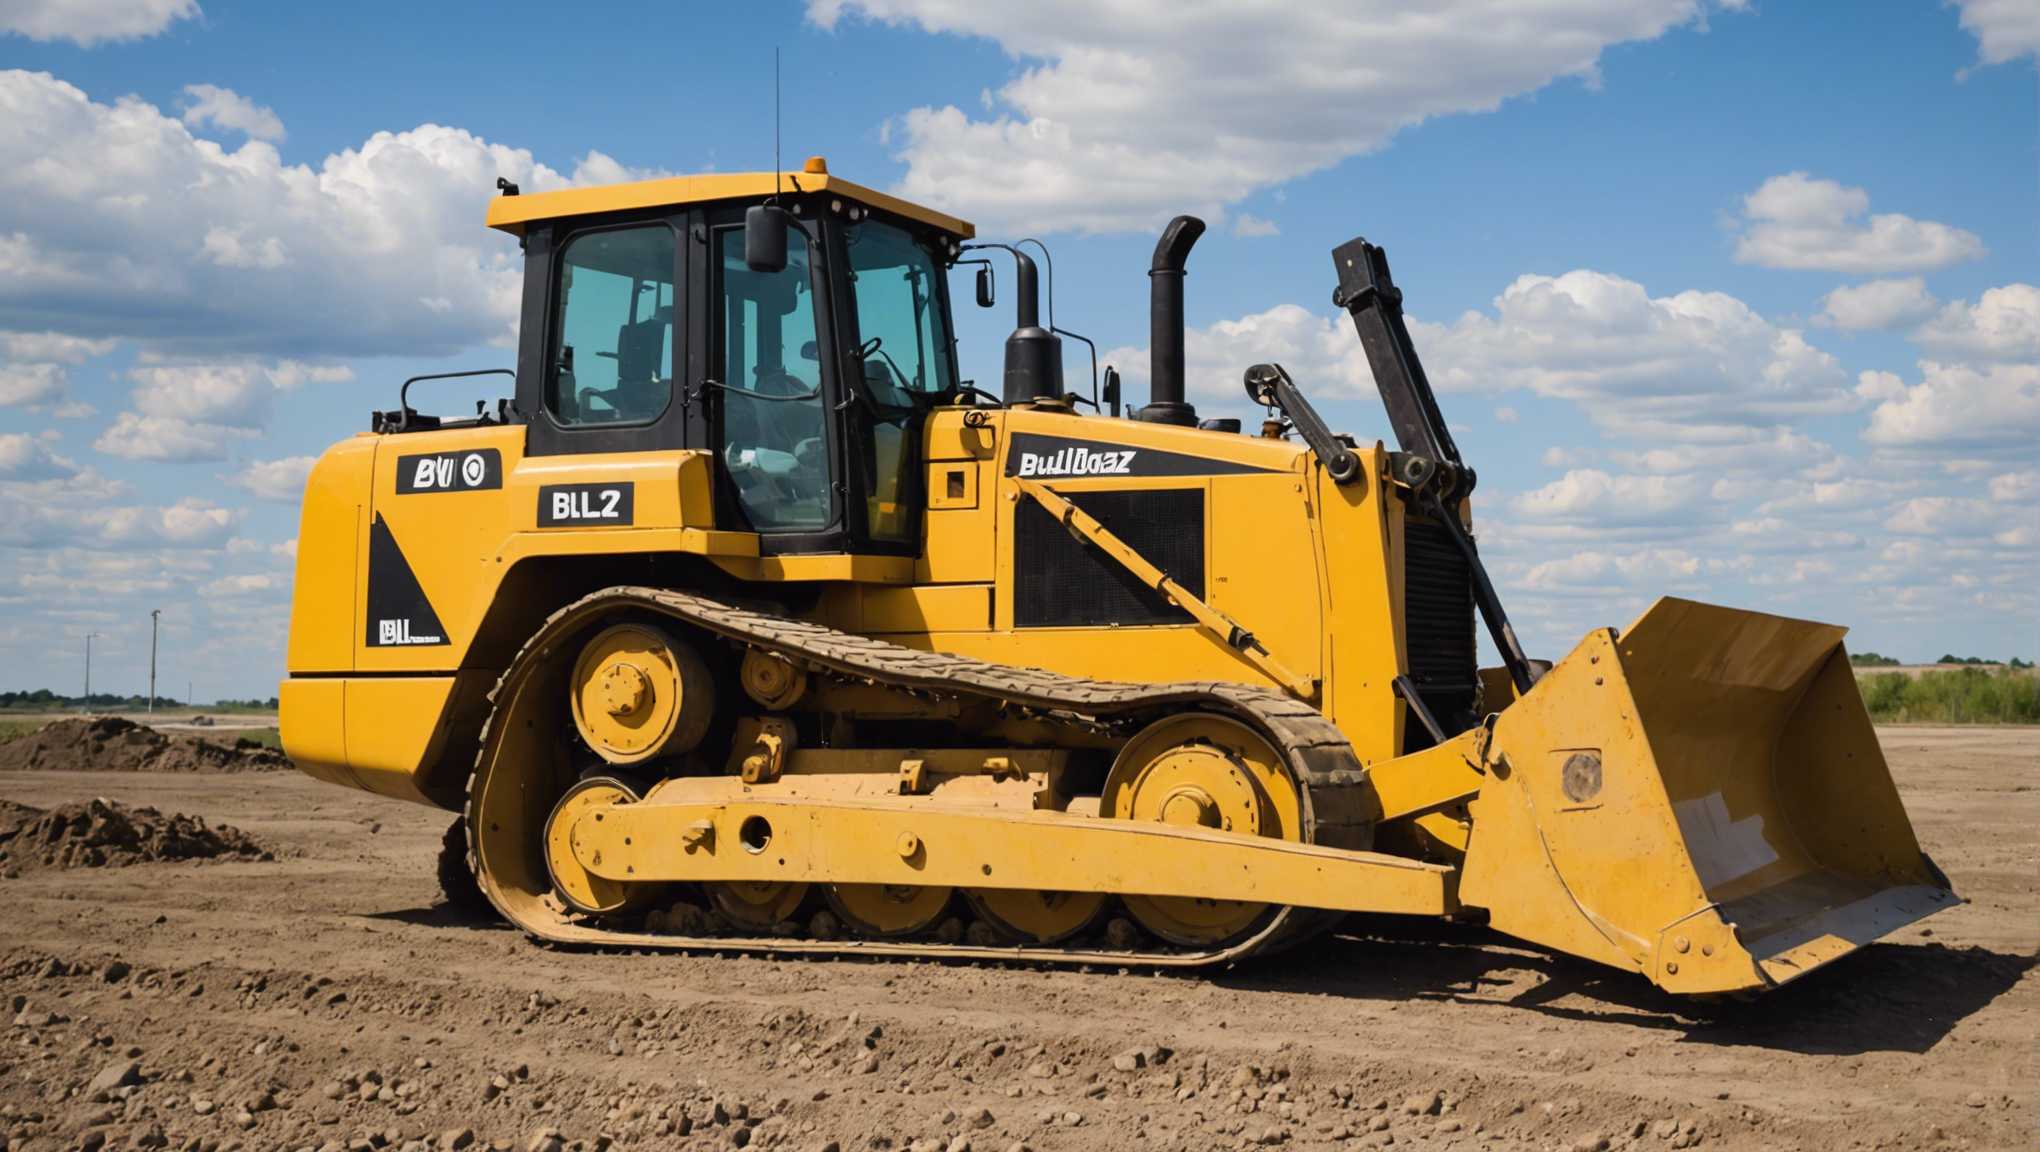 découvrez comment optimiser vos investissements en équipement lourd en maîtrisant les coûts de bulldozer.